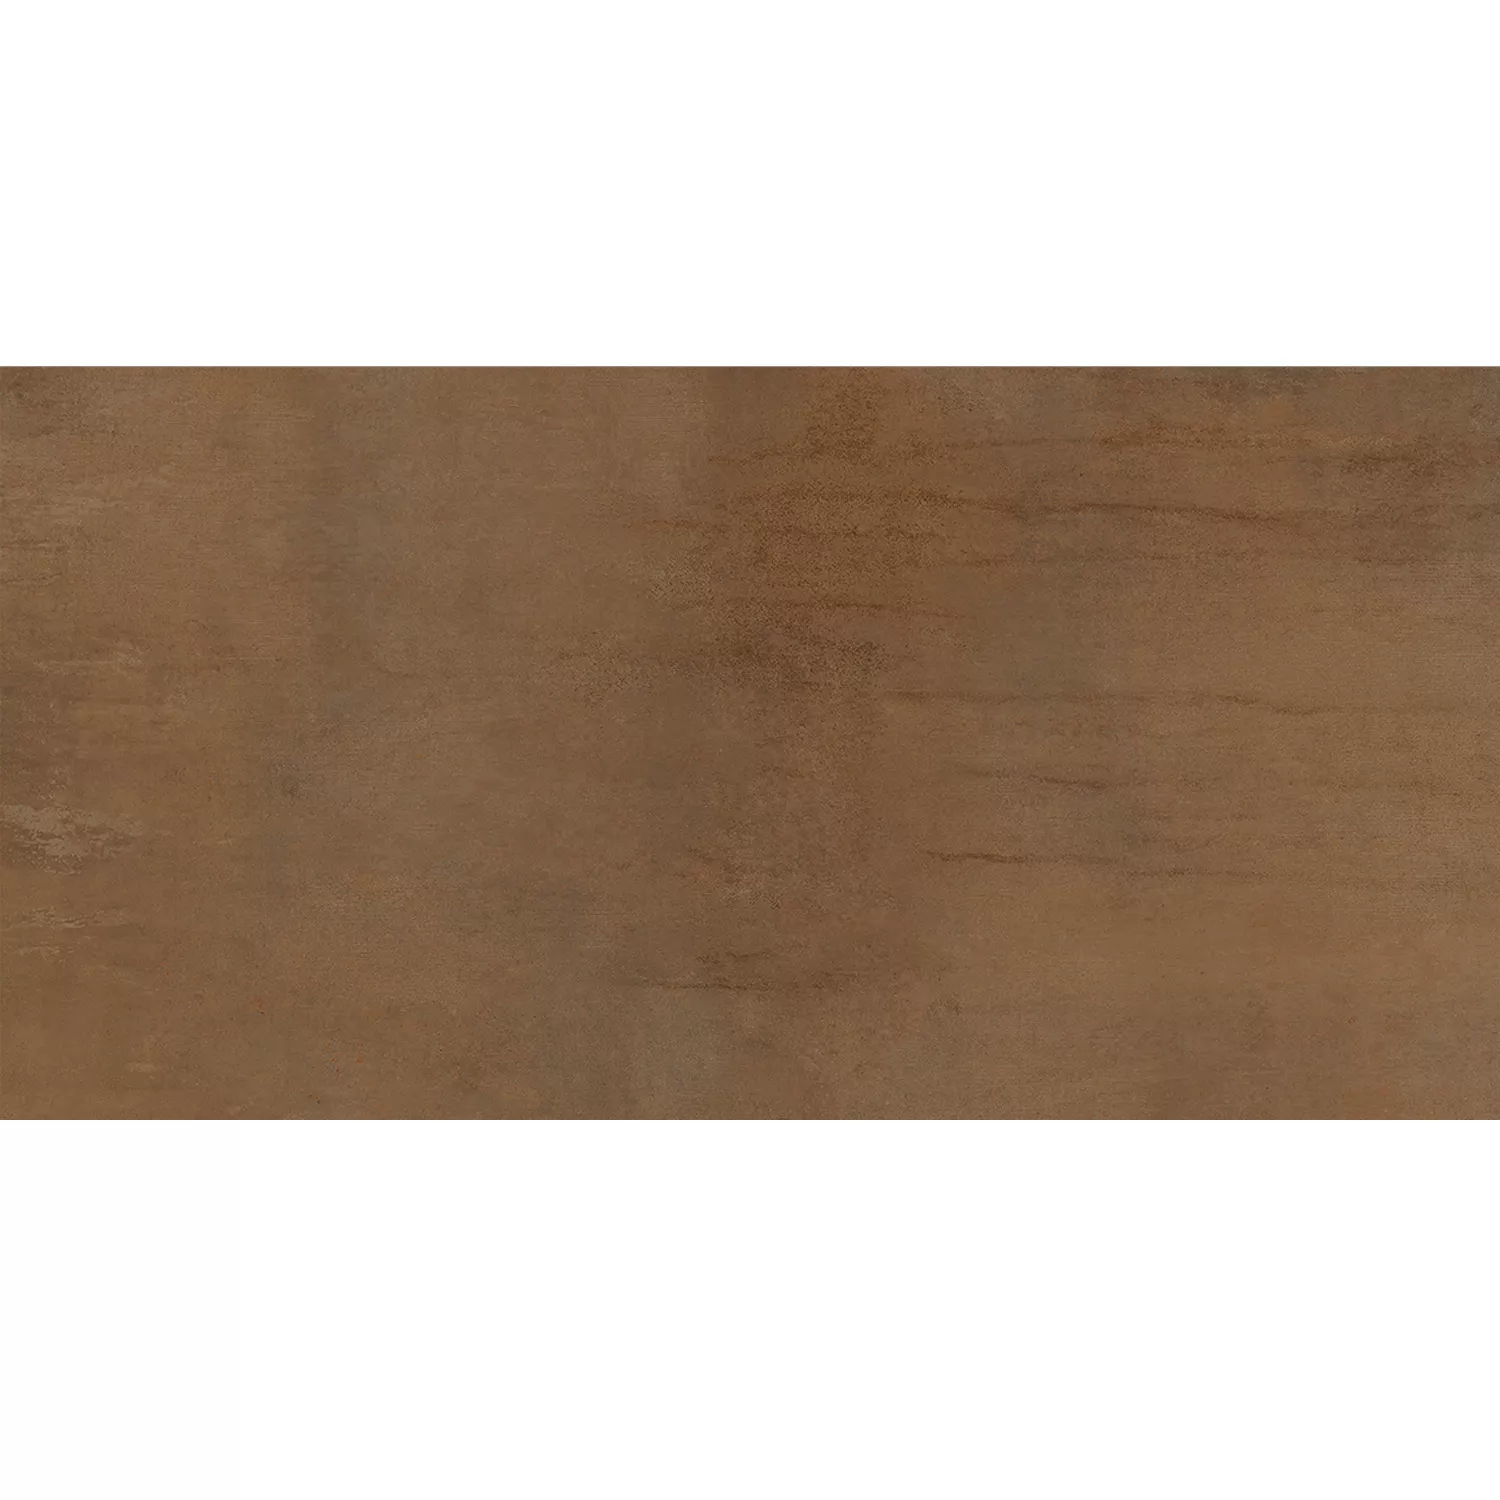 Πλακάκια Δαπέδου Tycoon Συγκεκριμένη Εμφάνιση R10 Σκουριά Kαφέ 30x60cm